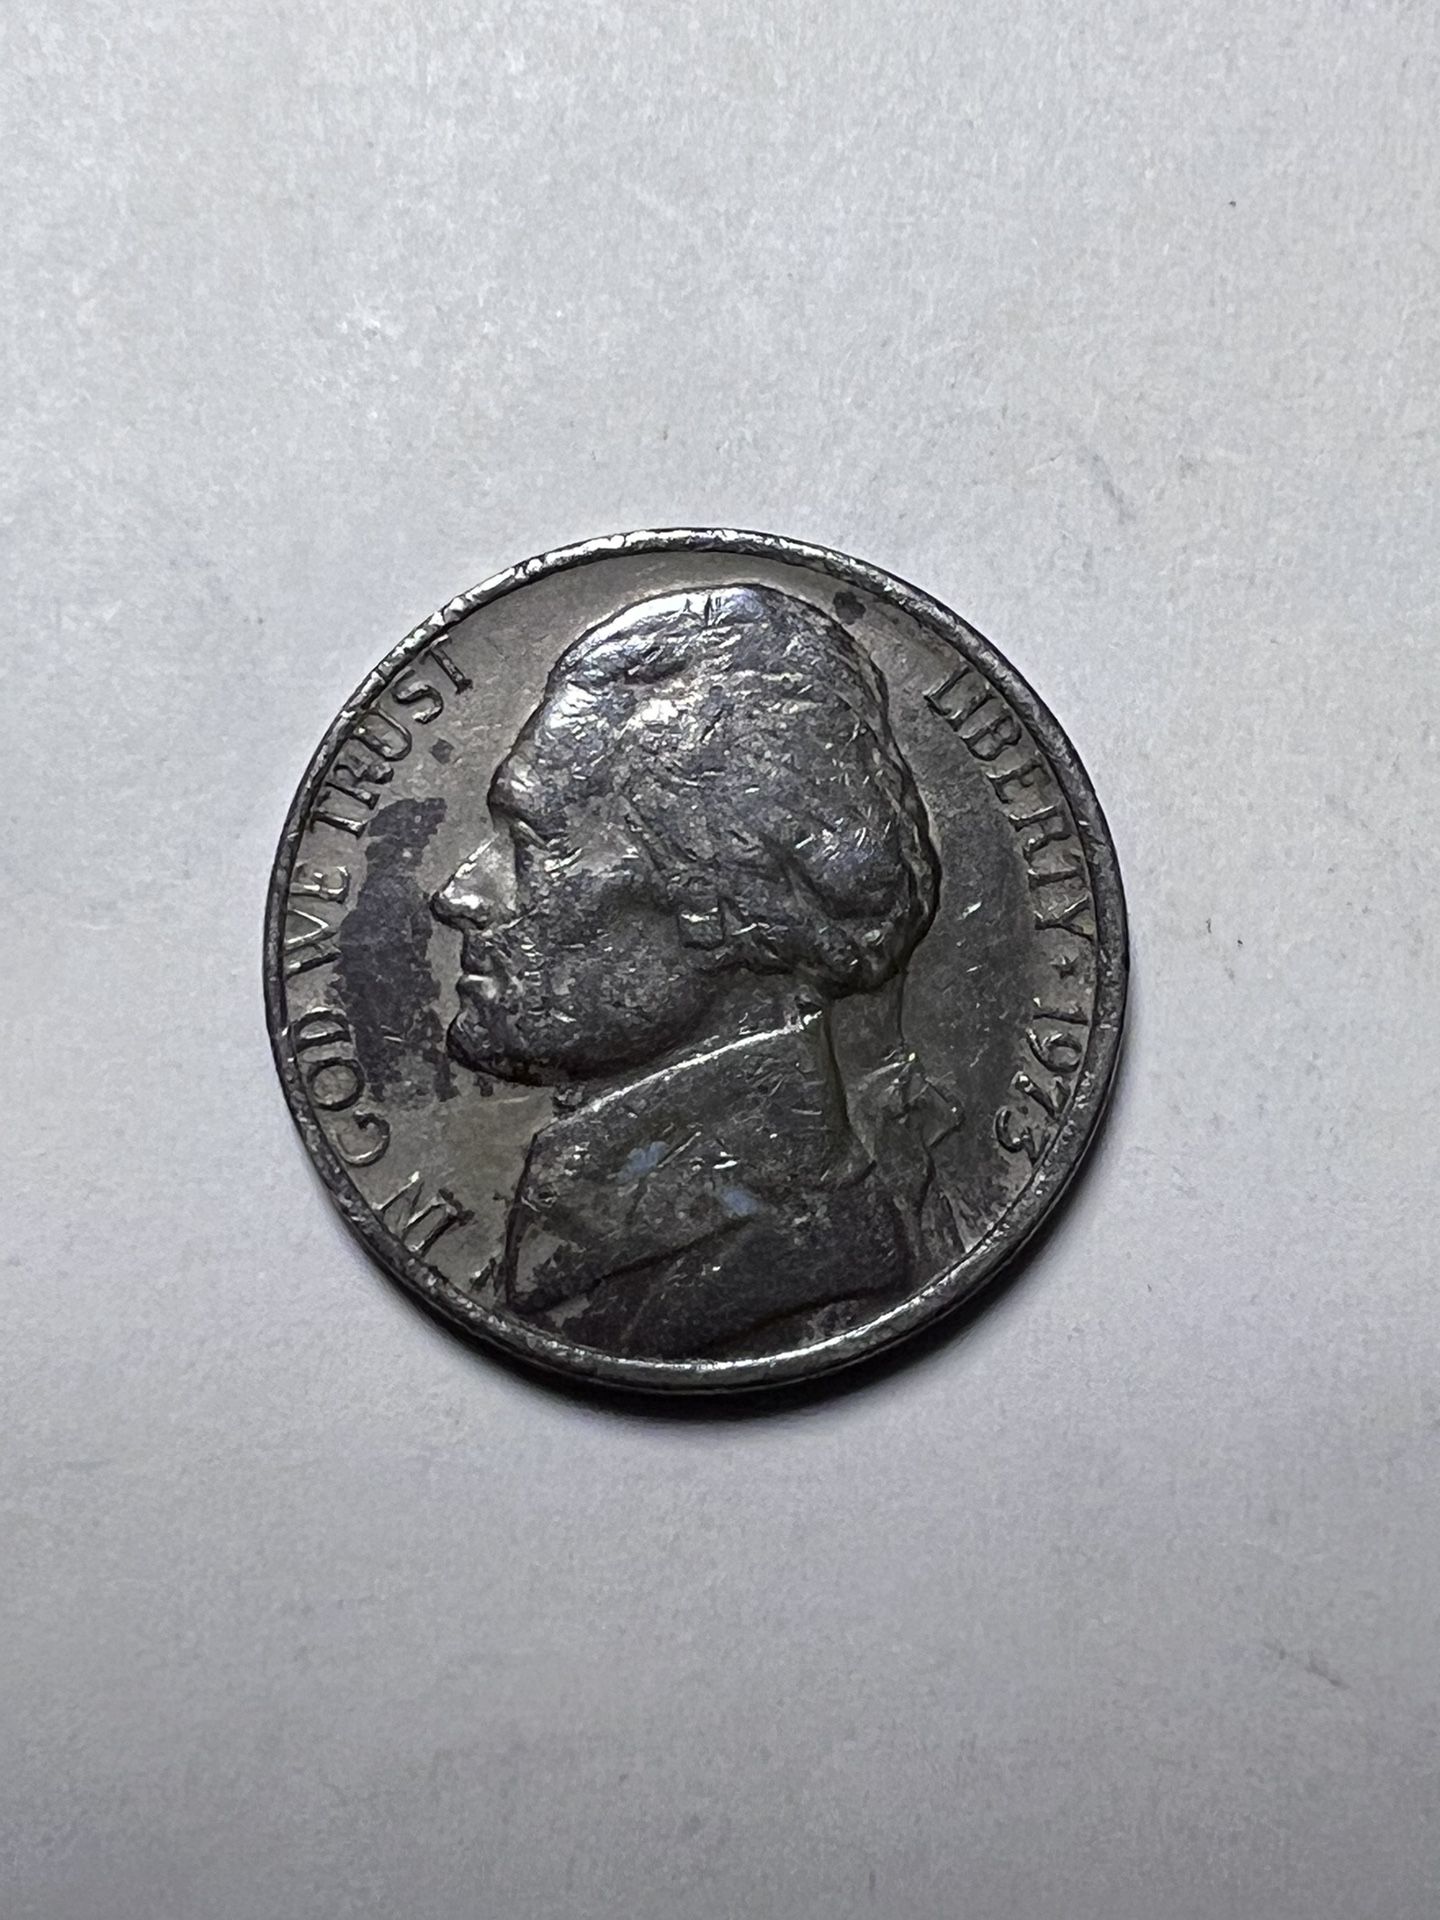 Nickel 1973